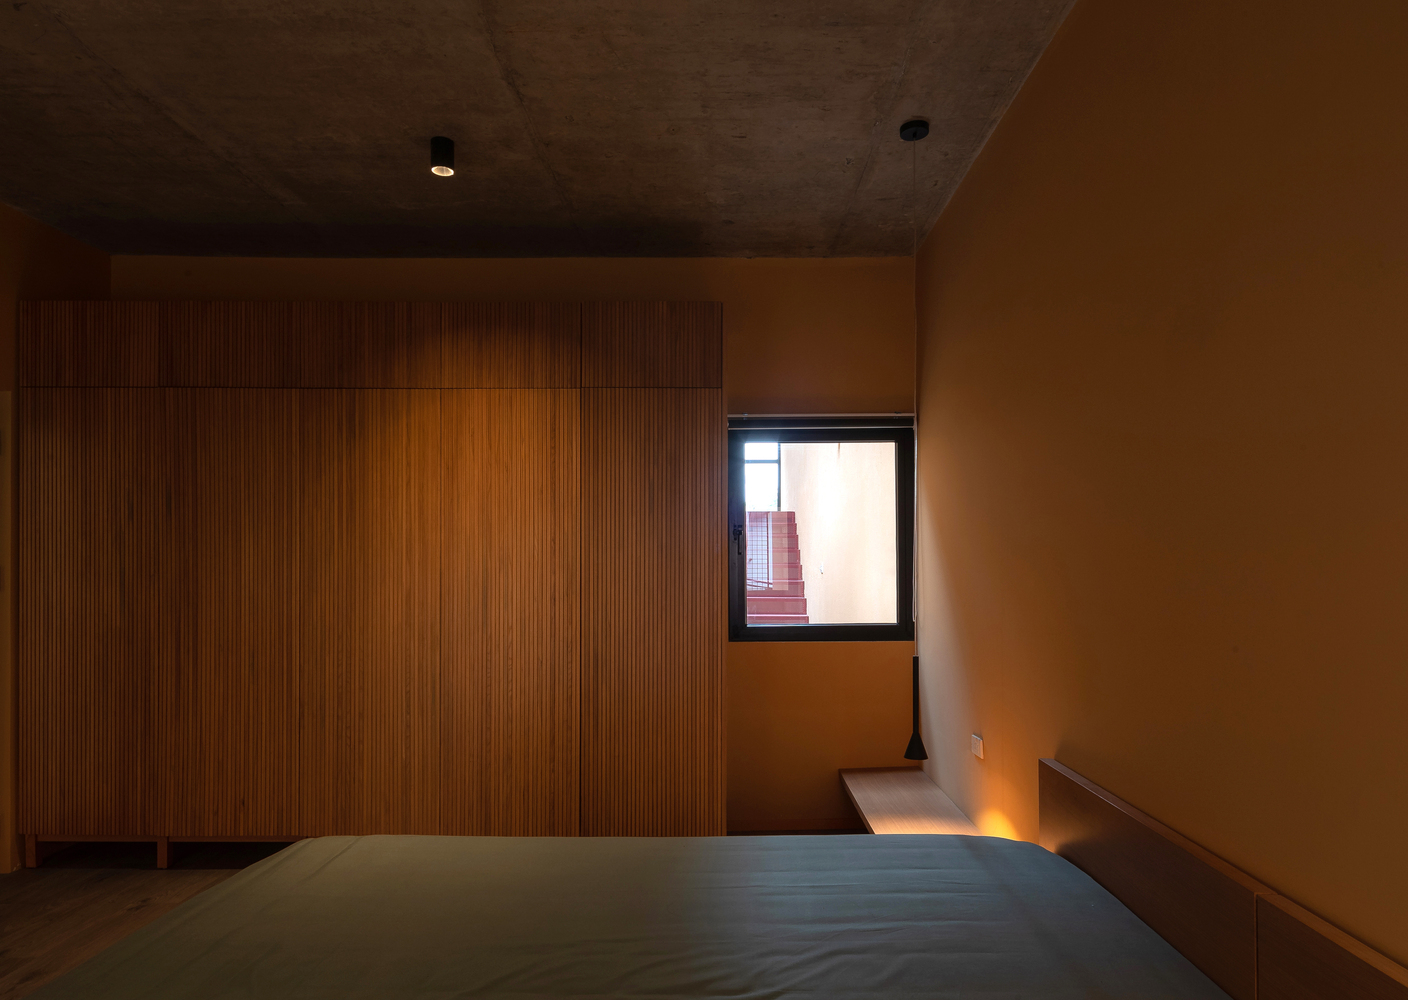 Những ô cửa kính trong suốt xung quanh phòng ngủ đóng vai trò lấy sáng, kết hợp hệ thống đèn âm trần nhỏ gọn tạo sự tươi sáng mà vẫn tạo sự riêng tư cho gia chủ.